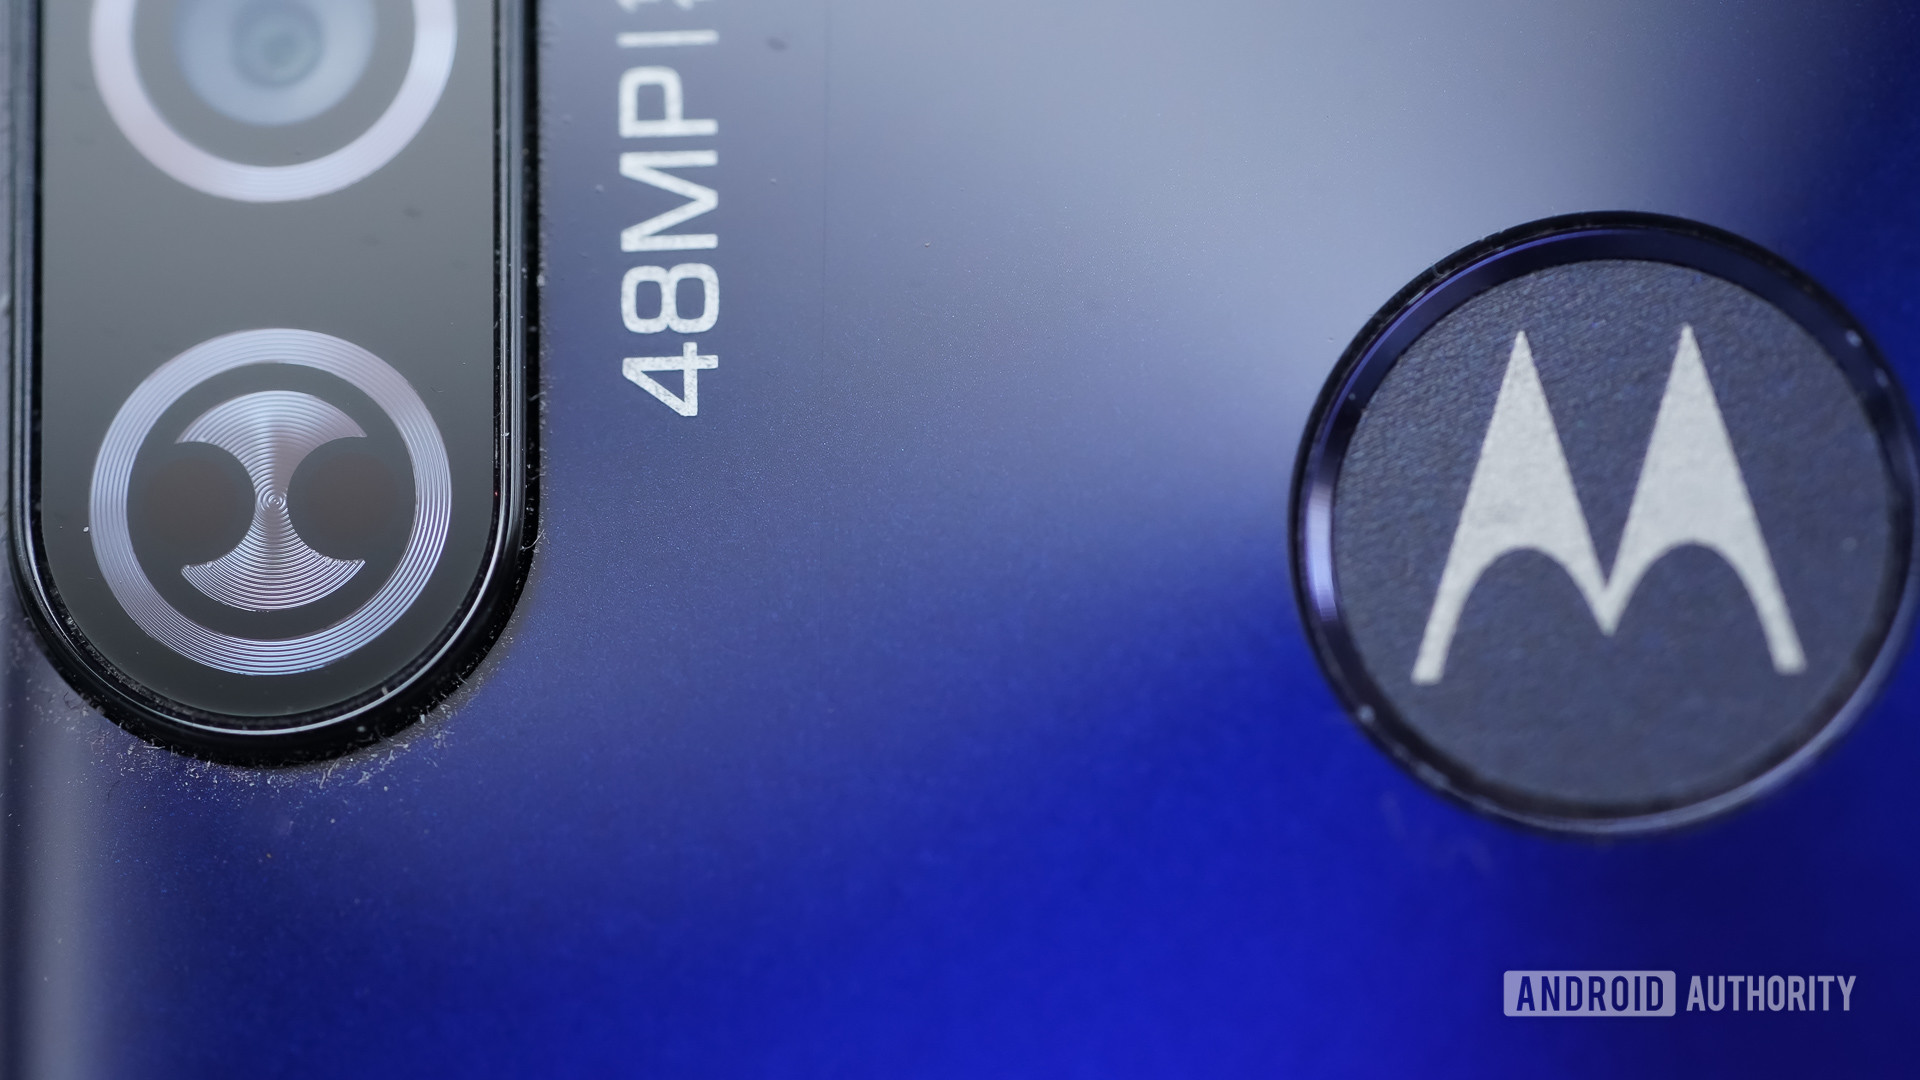 Motorola Moto G Stylus and Power fingerprint